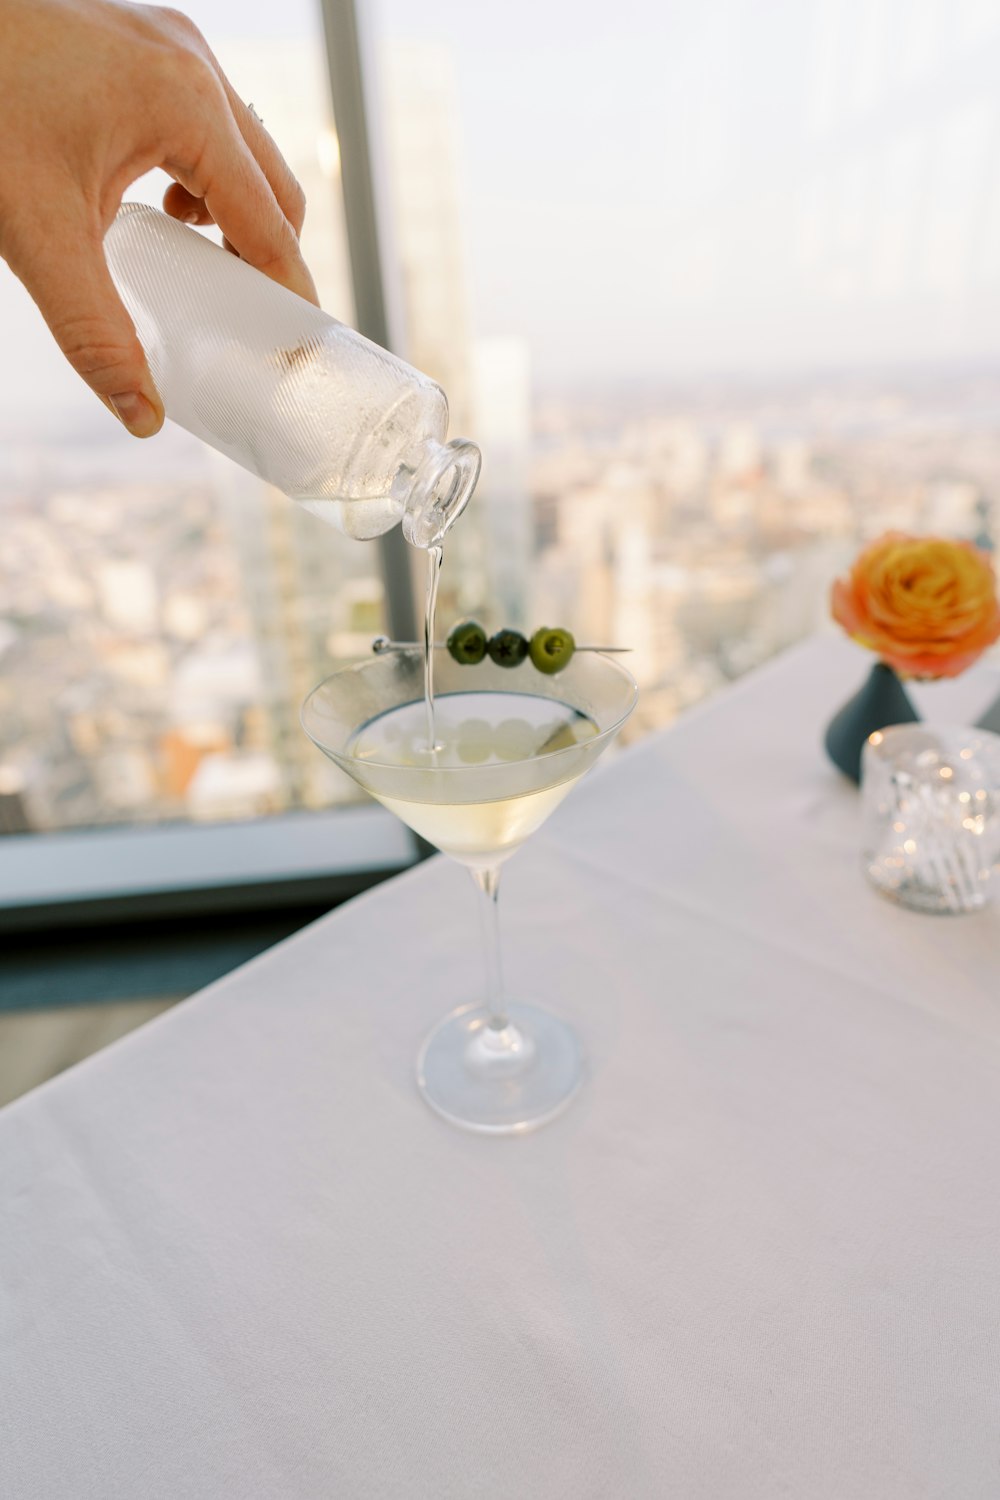 Une personne verse une boisson dans un verre à martini